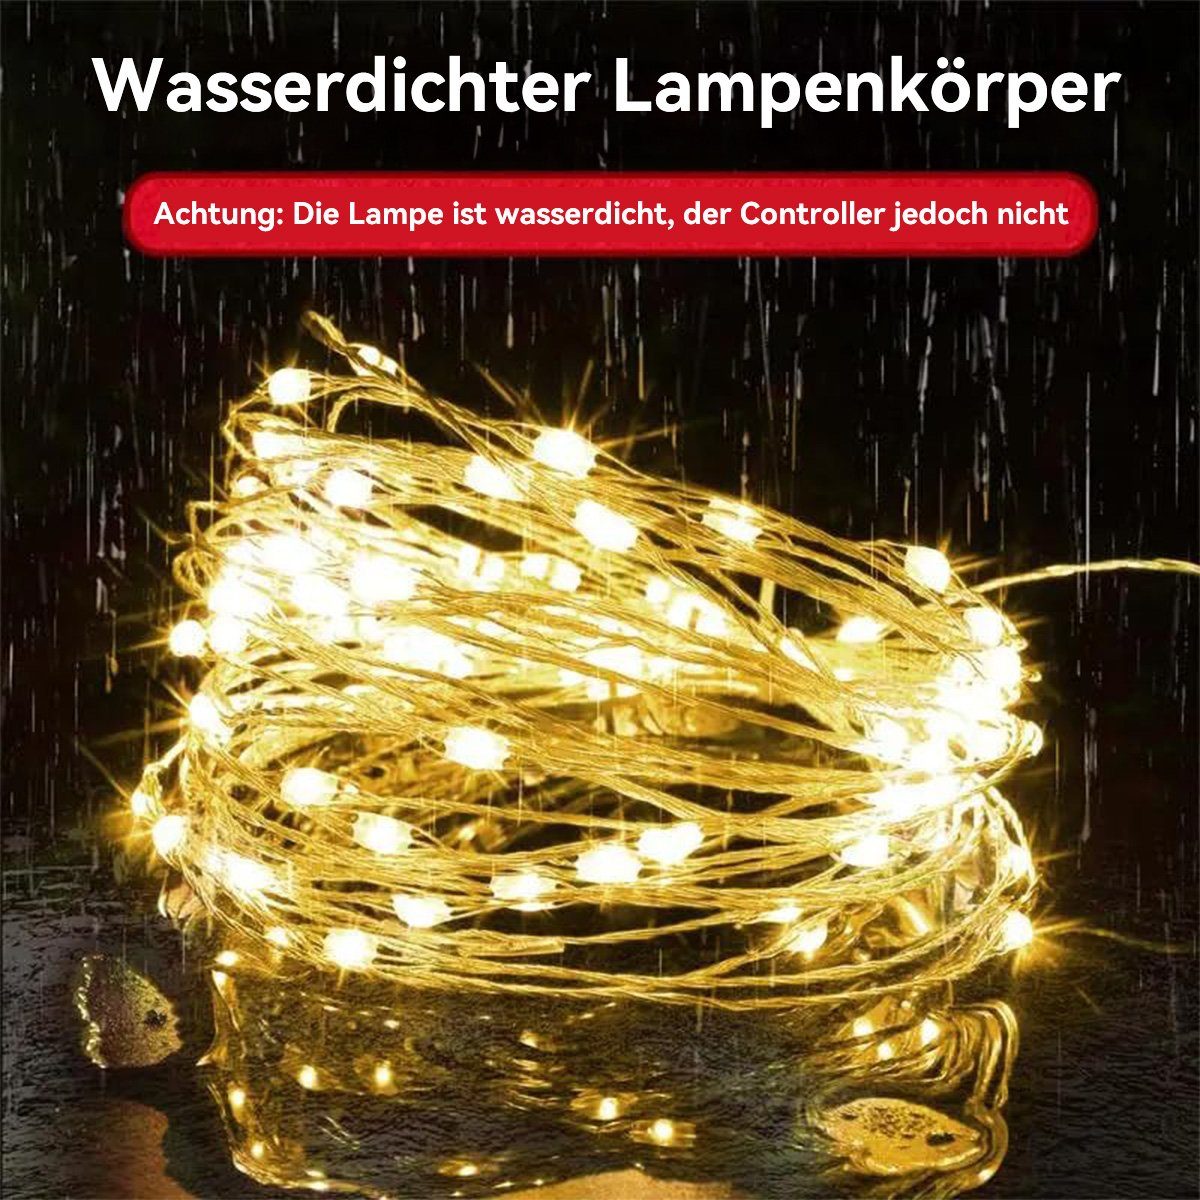 Welikera Christbaumschmuck Lichterketten für Weihnachtsbaum Musik warmweiß Dekoration,3m,Ohne Die Akku,mit